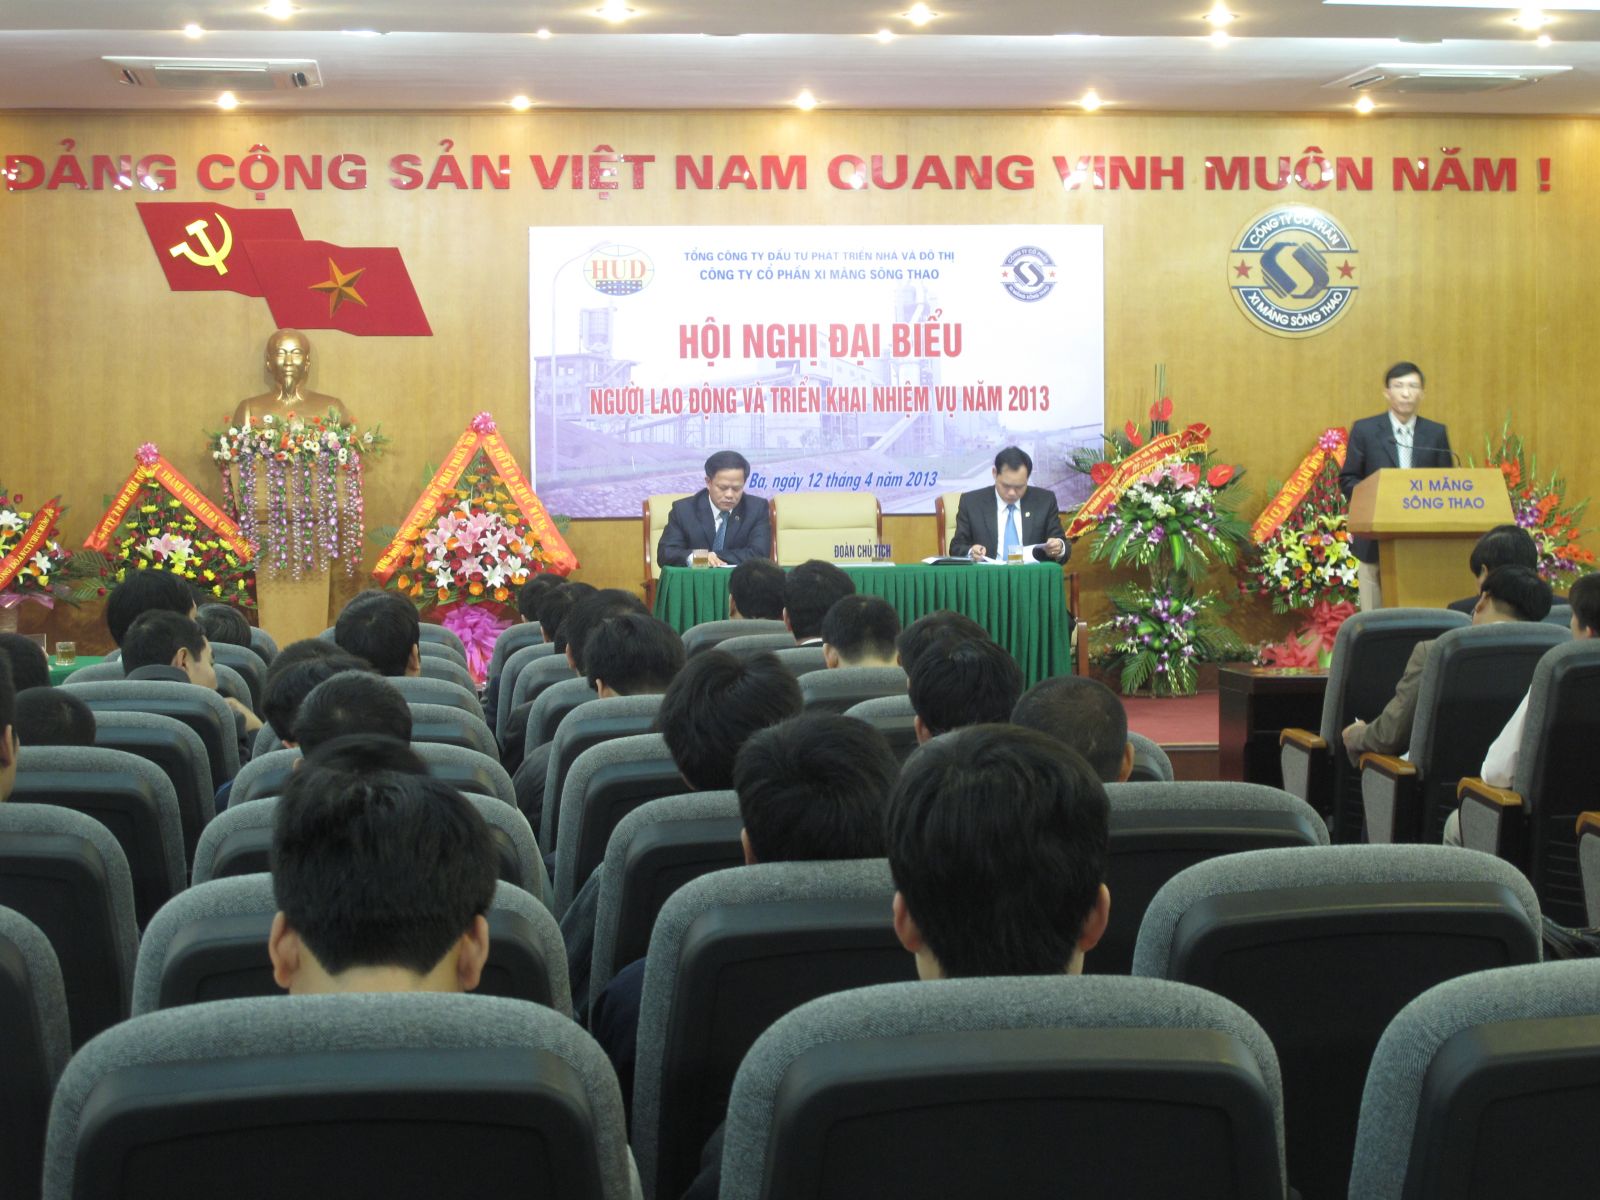 Hội nghị Đại biểu Người Lao động và triển khai nhiệm vụ năm 2013